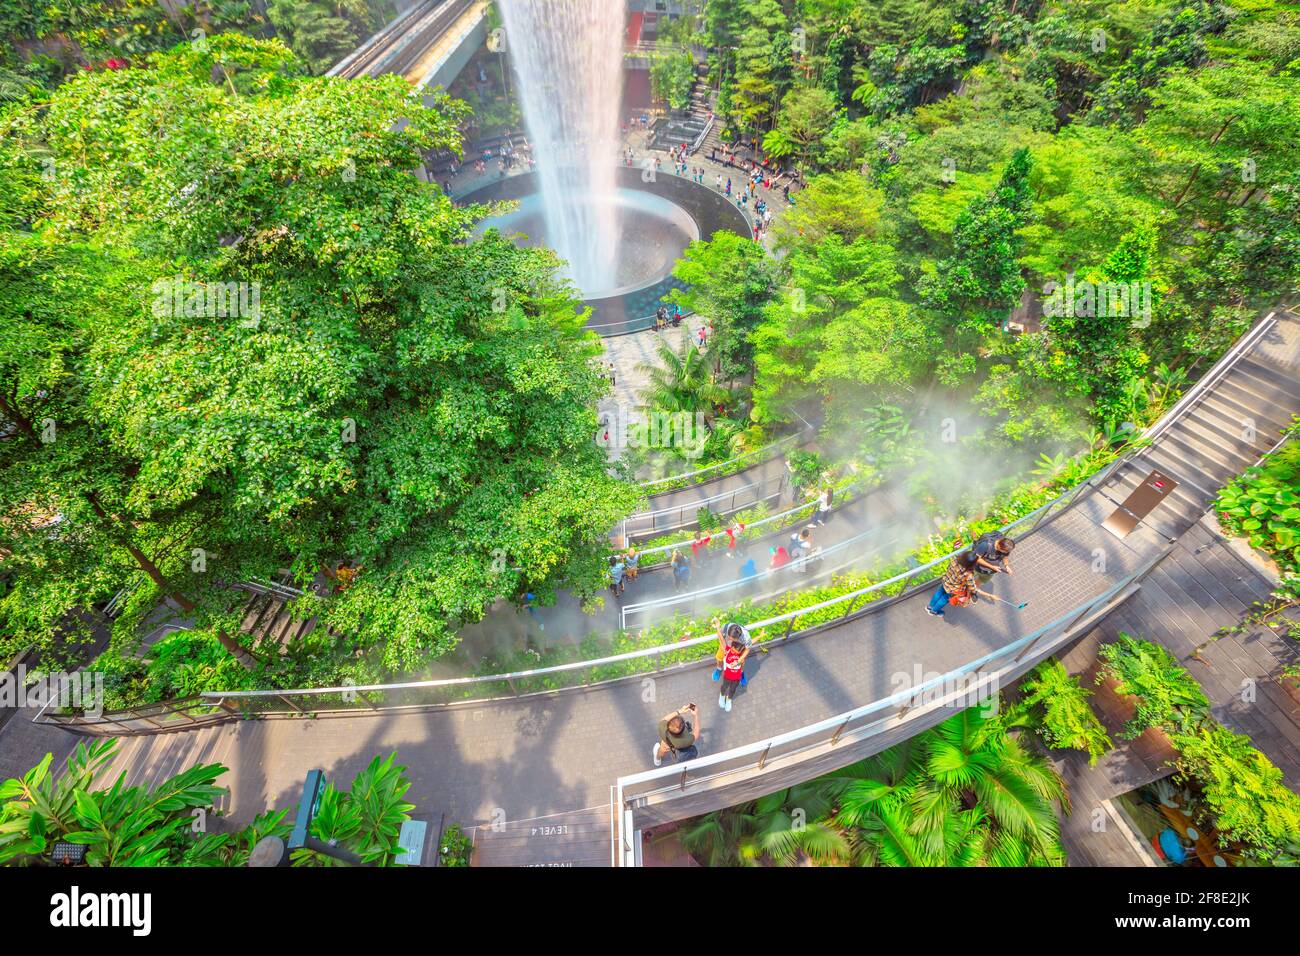 Singapour - 8 août 2019 : vue aérienne des détails de Rain Vortex, la plus grande chute d'eau intérieure au monde et jardin de haies Maze en terrasse à l'aéroport de Jewel Banque D'Images